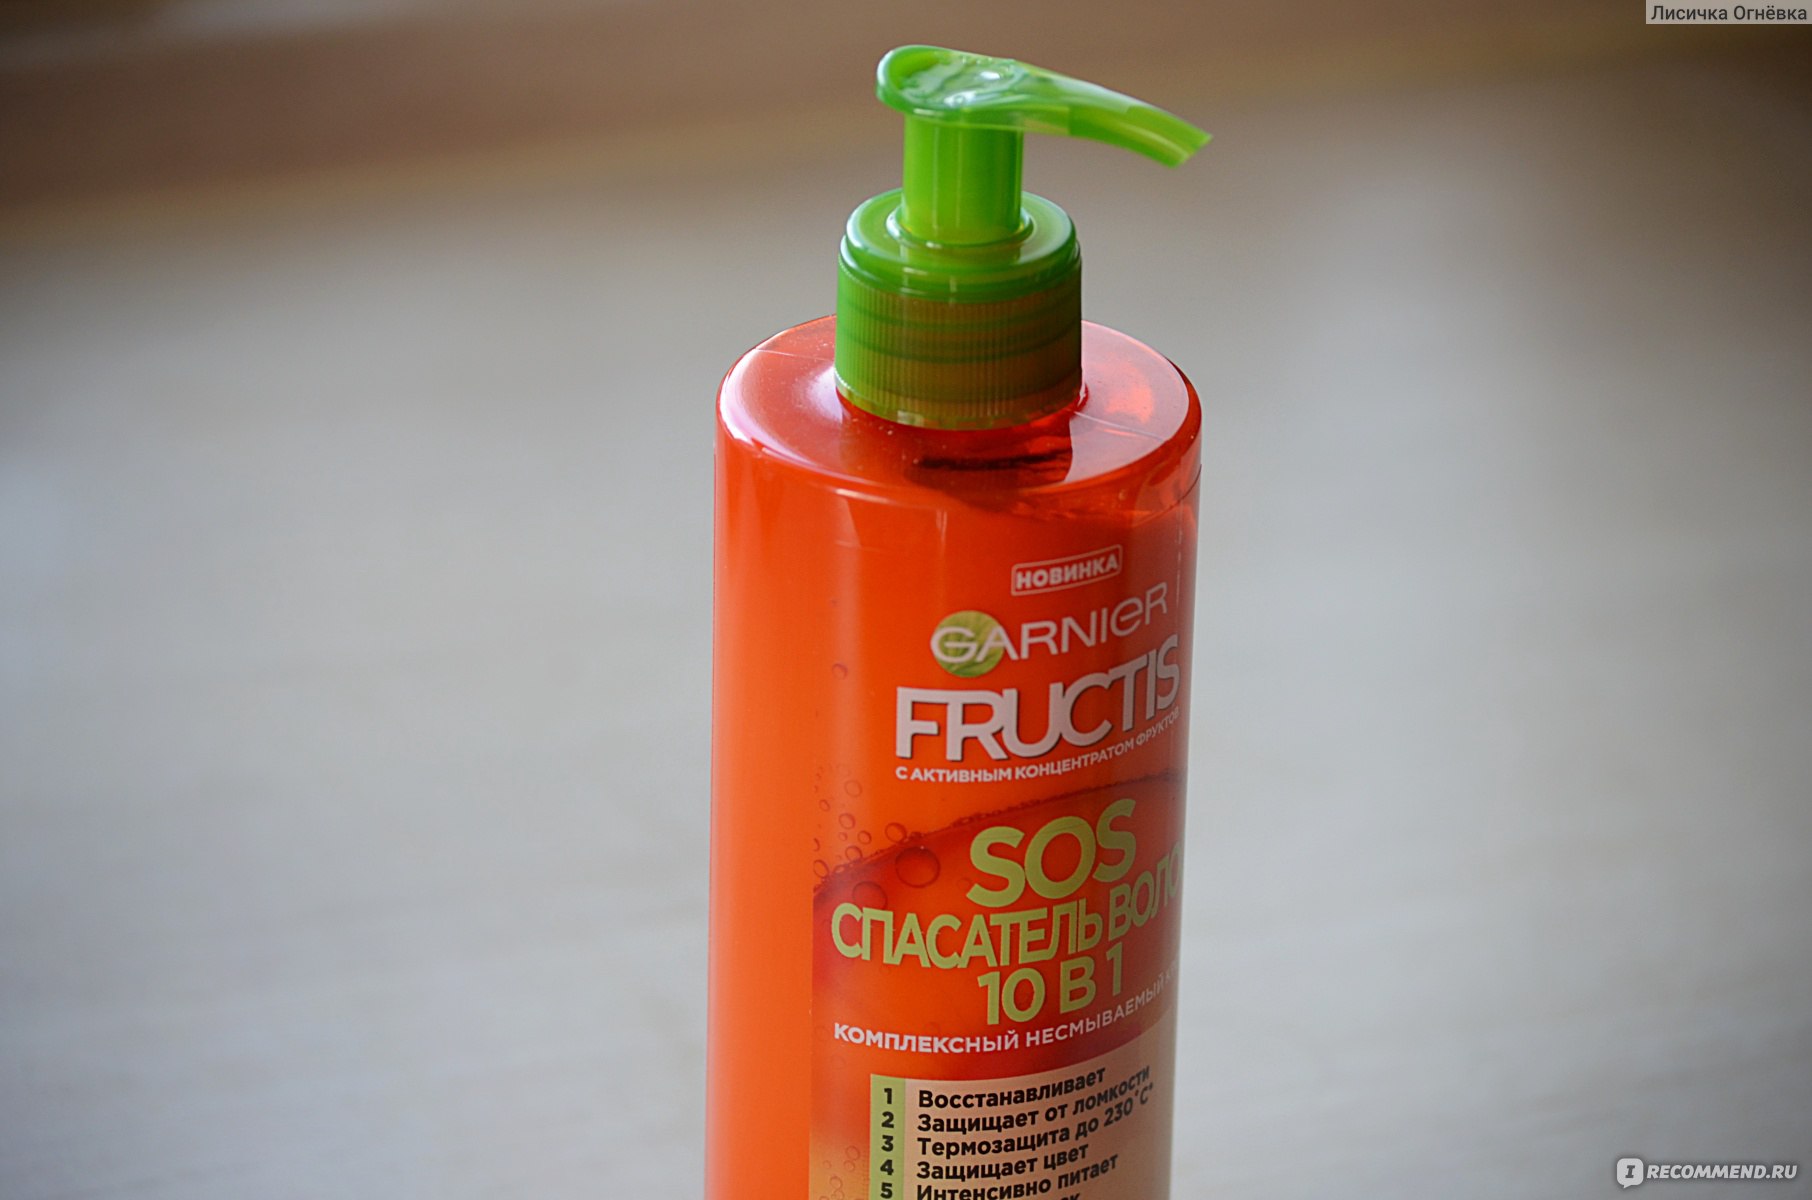 Garnier fructis style гель для укладки эффект мокрых волос